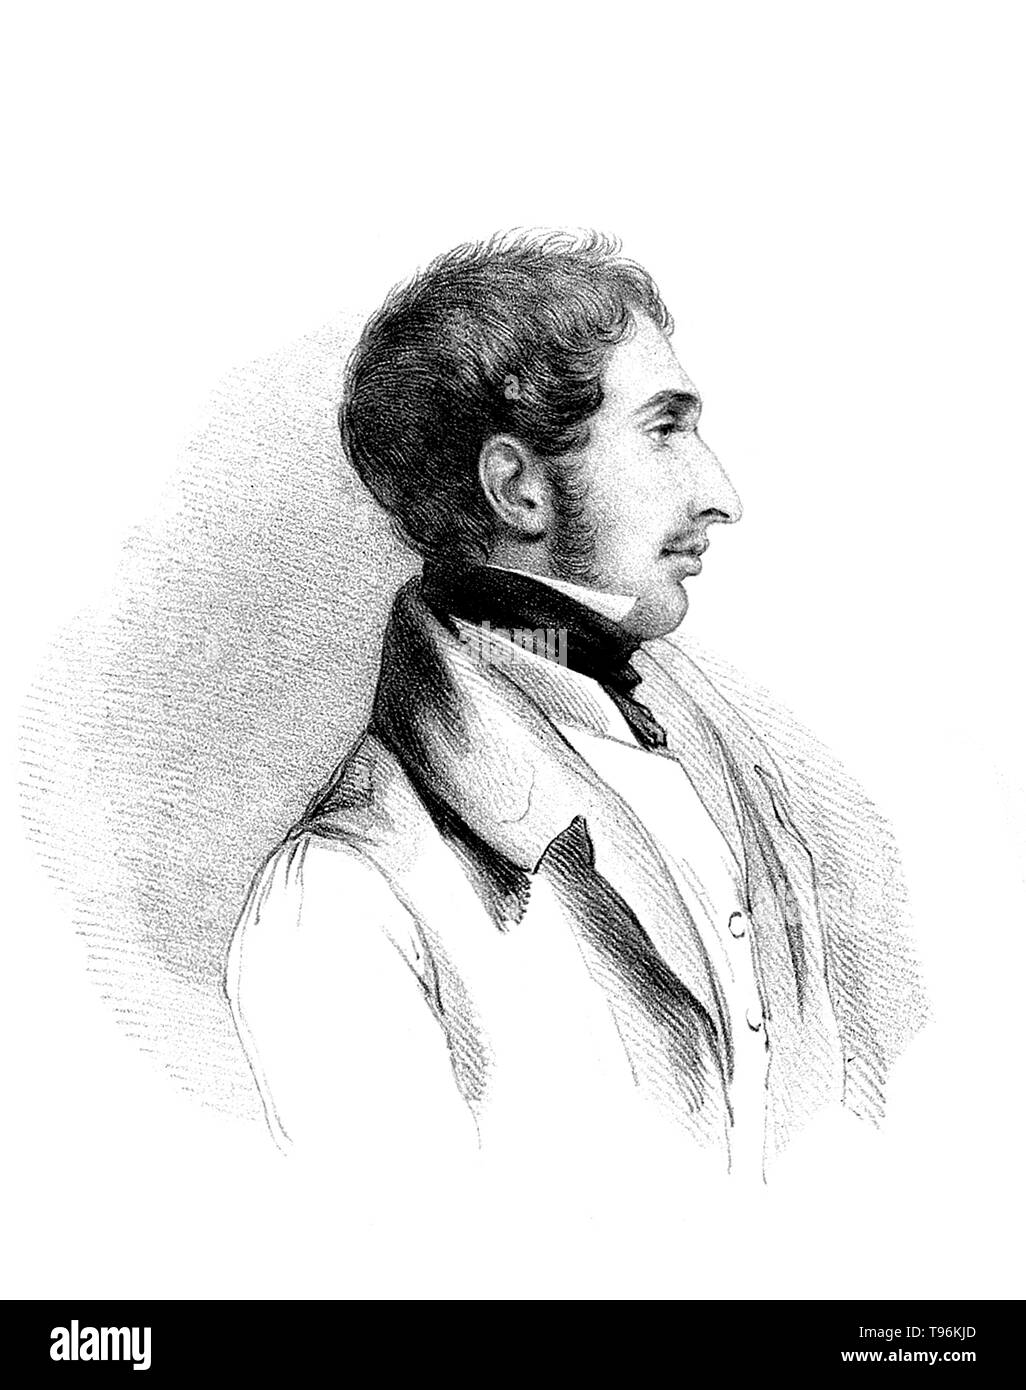 Robert FitzRoy (5 juillet 1805 - 30 avril 1865) était un officier anglais de la Royal Navy. Il a atteint la renommée que le capitaine du HMS Beagle durant la célèbre Darwin voyage. En tant que gouverneur de la Nouvelle-Zélande, de 1843 à 1845, il a essayé de protéger les Maoris de ventes illégales de terres revendiquées par des colons britanniques. FitzRoy est un précurseur de la météorologiste qui fait la précision des prévisions météorologiques, qu'il a appelé d'un nom nouveau de sa propre invention : les prévisions. Banque D'Images